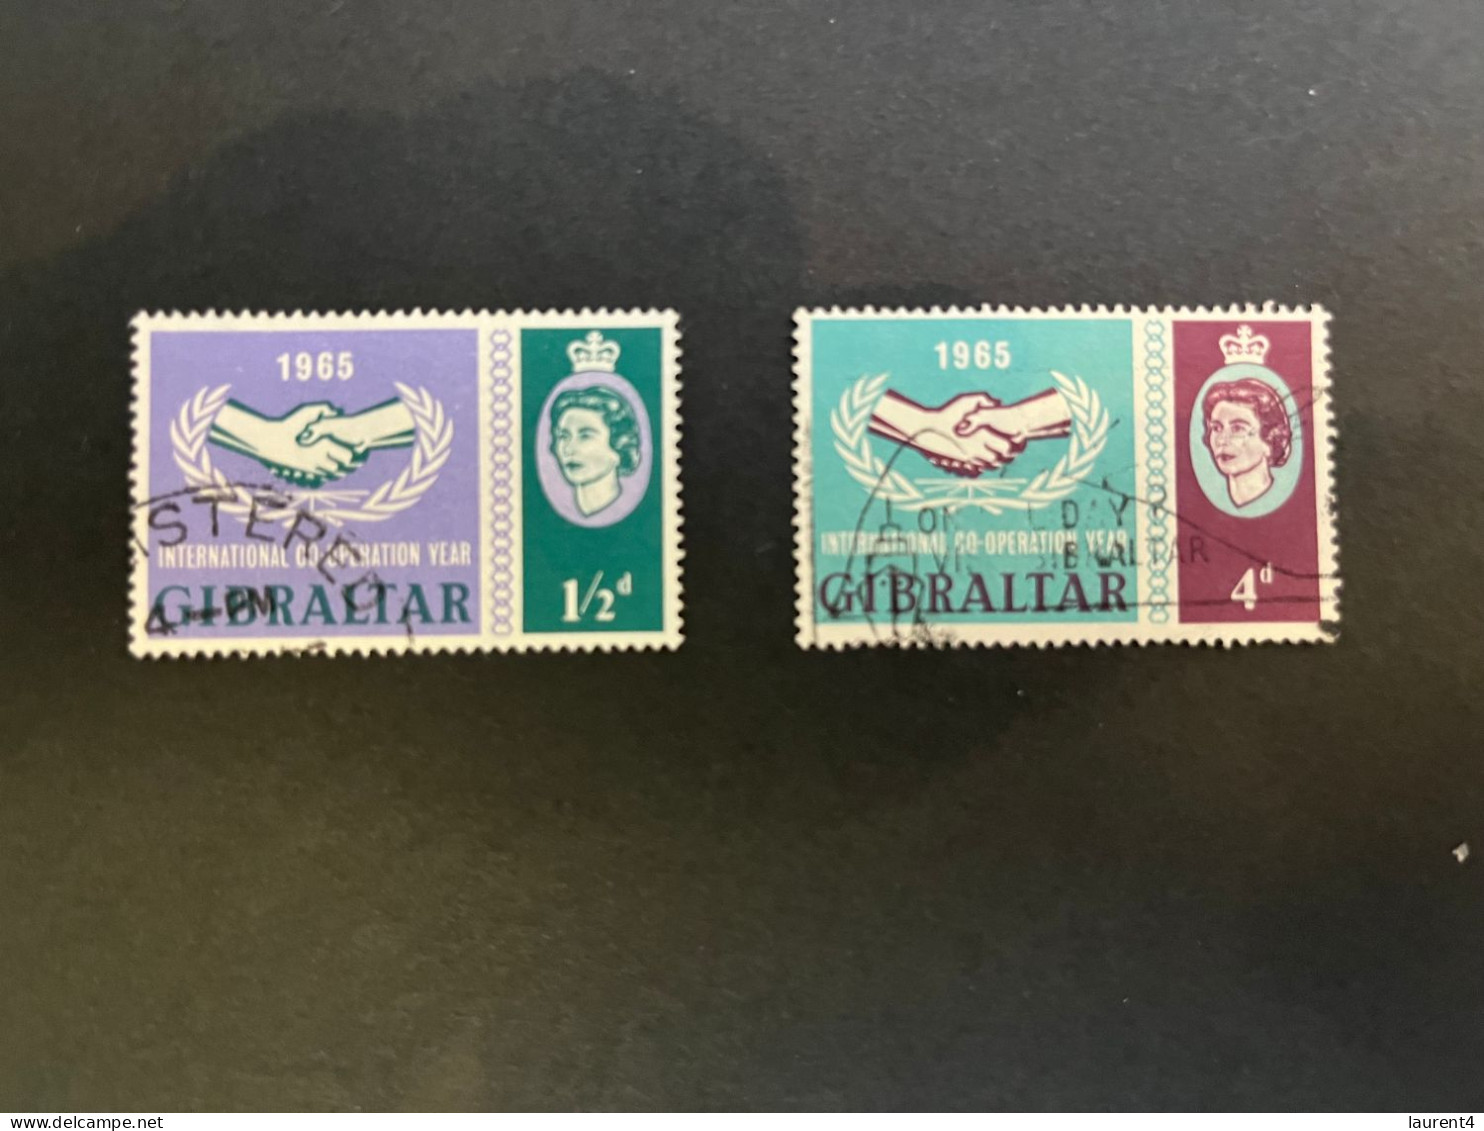 14-5-2024 (stamp) Obliterer  / Used - Co-operation Year 1965 - Gibraltar (2 Values) - Gibraltar